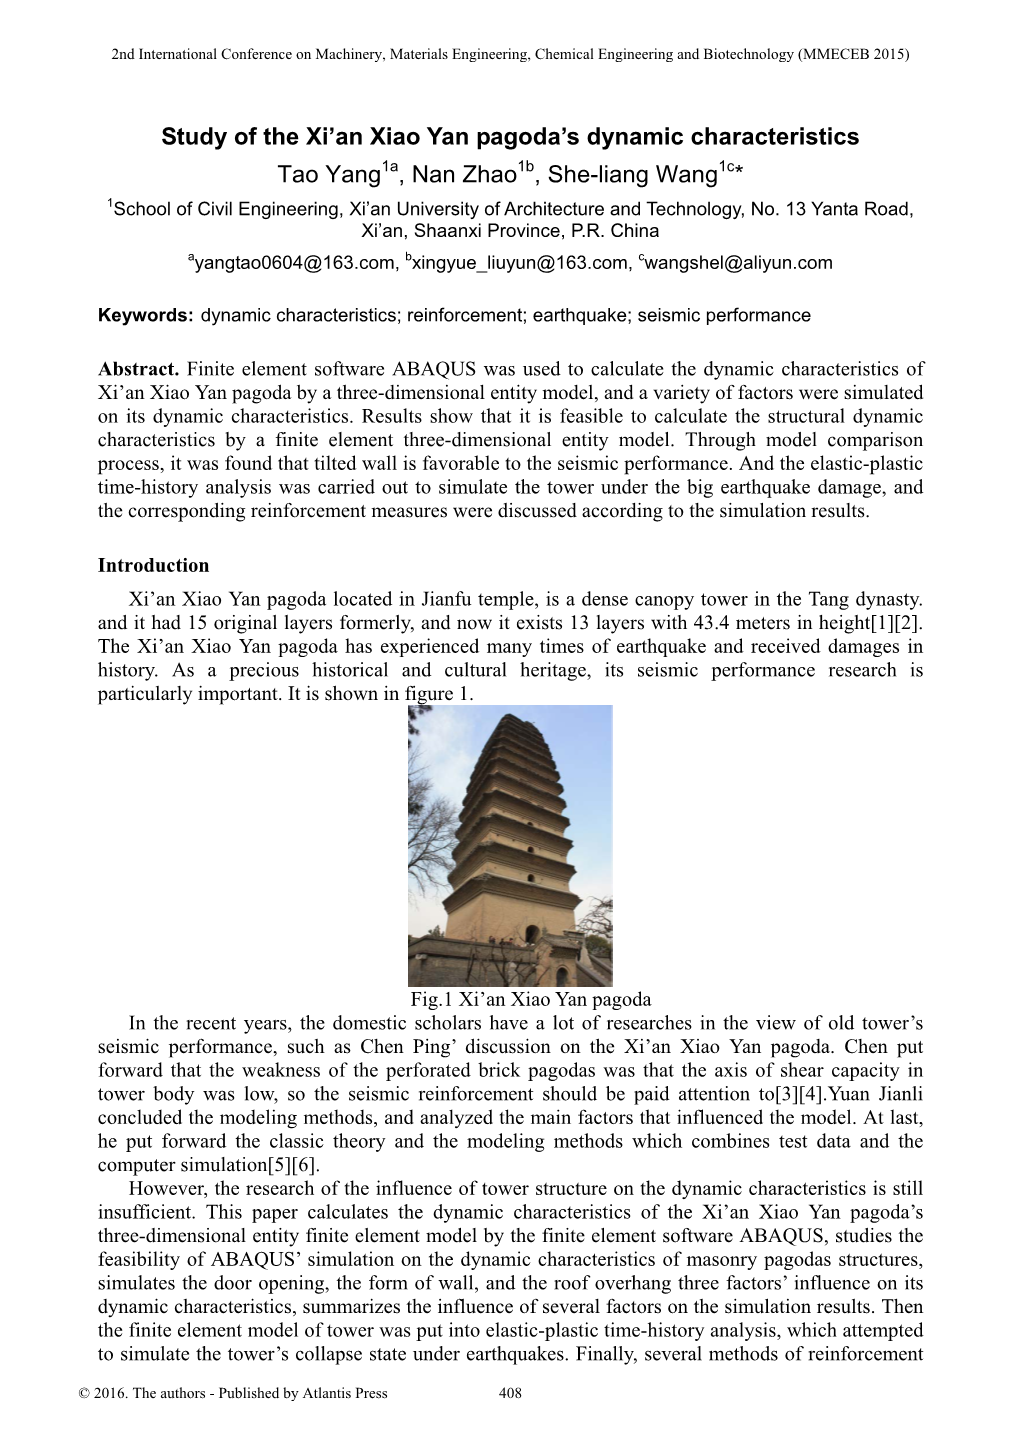 Study of the Xi'an Xiao Yan Pagoda's Dynamic Characteristics Tao Yang